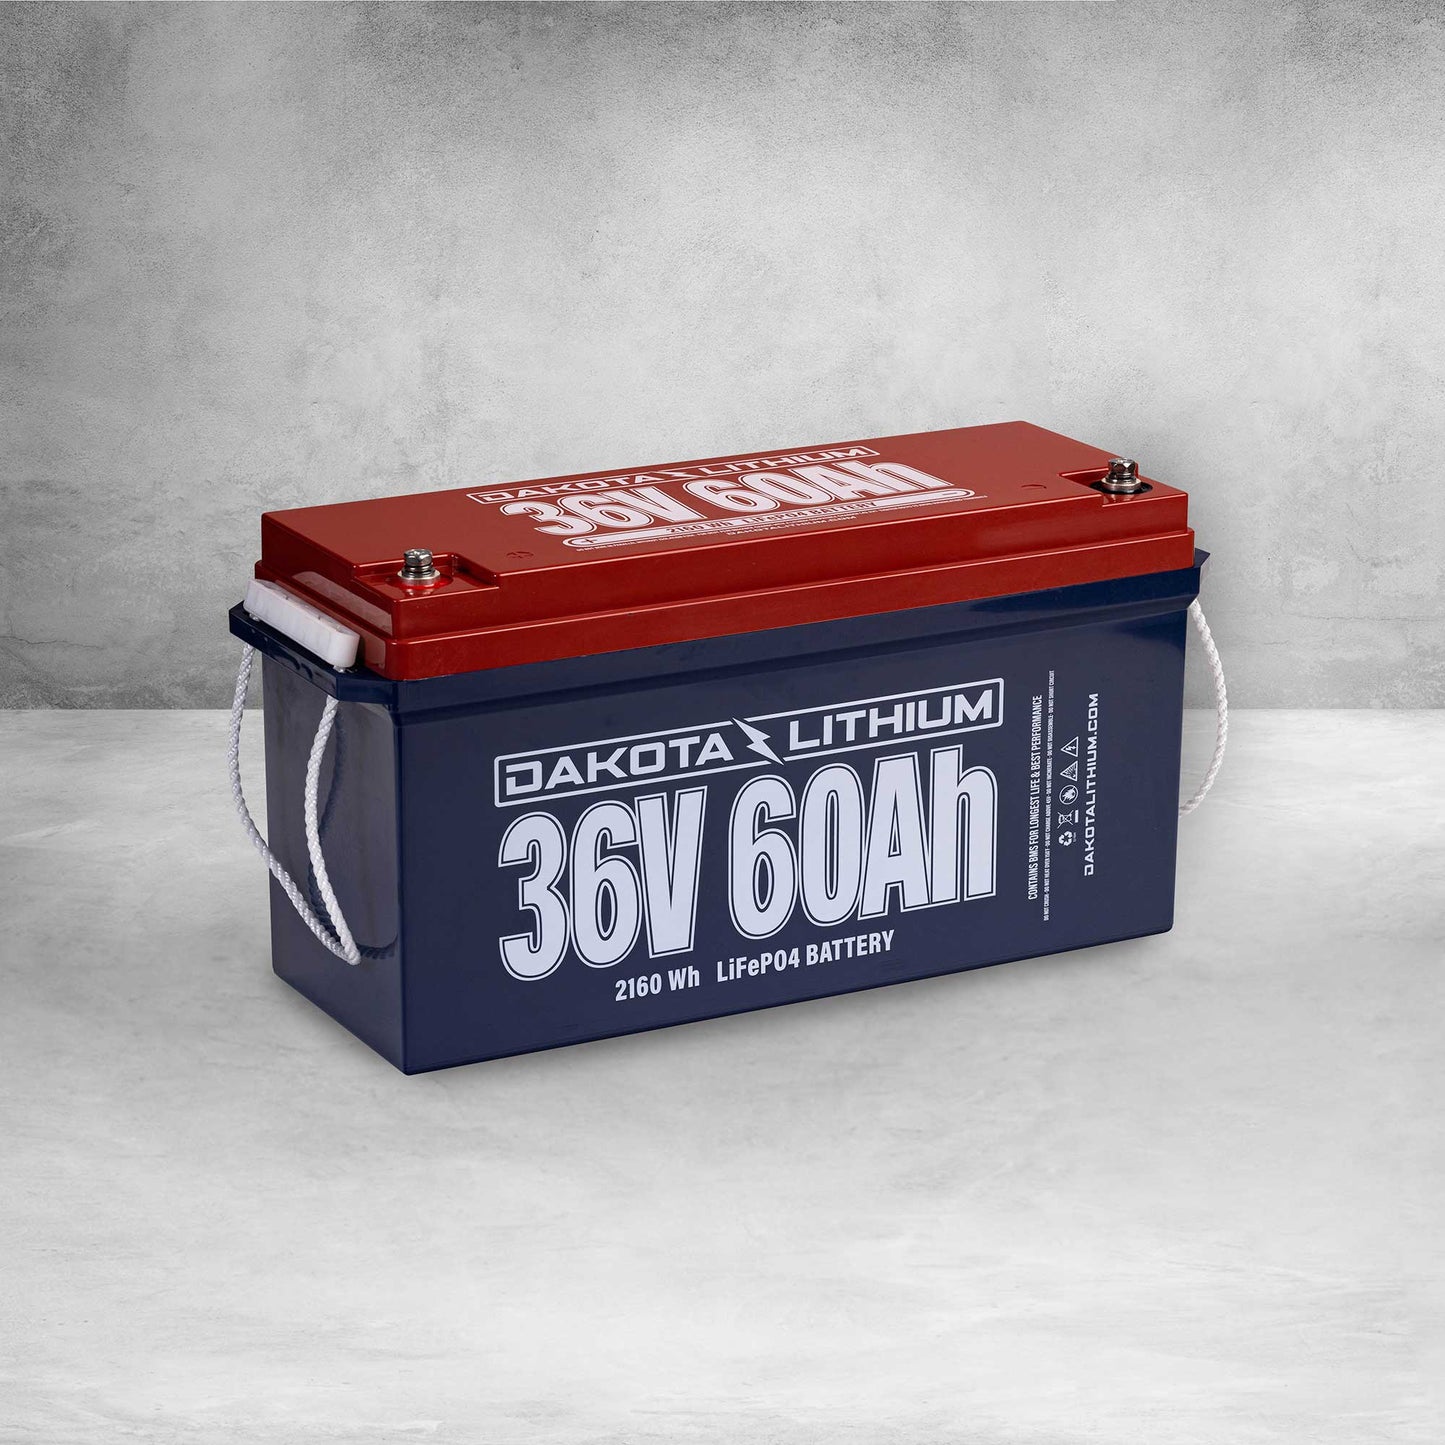 Dakota Lithium Battery 36V 60AH GOLF CART BATTERY